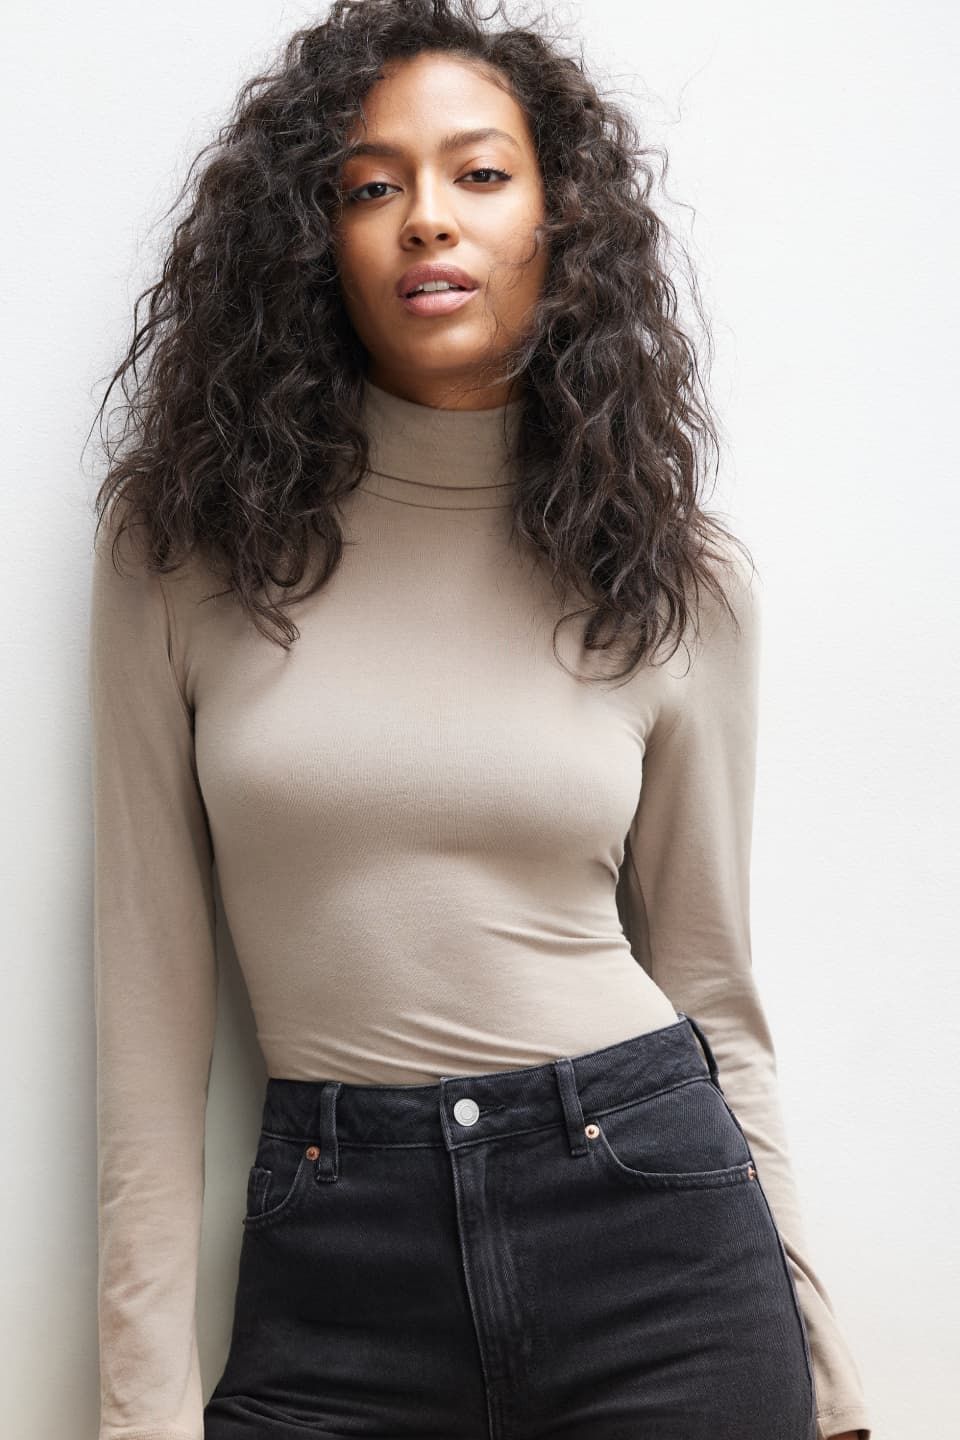 A model wears a beige long sleeve turtleneck with black jeans.